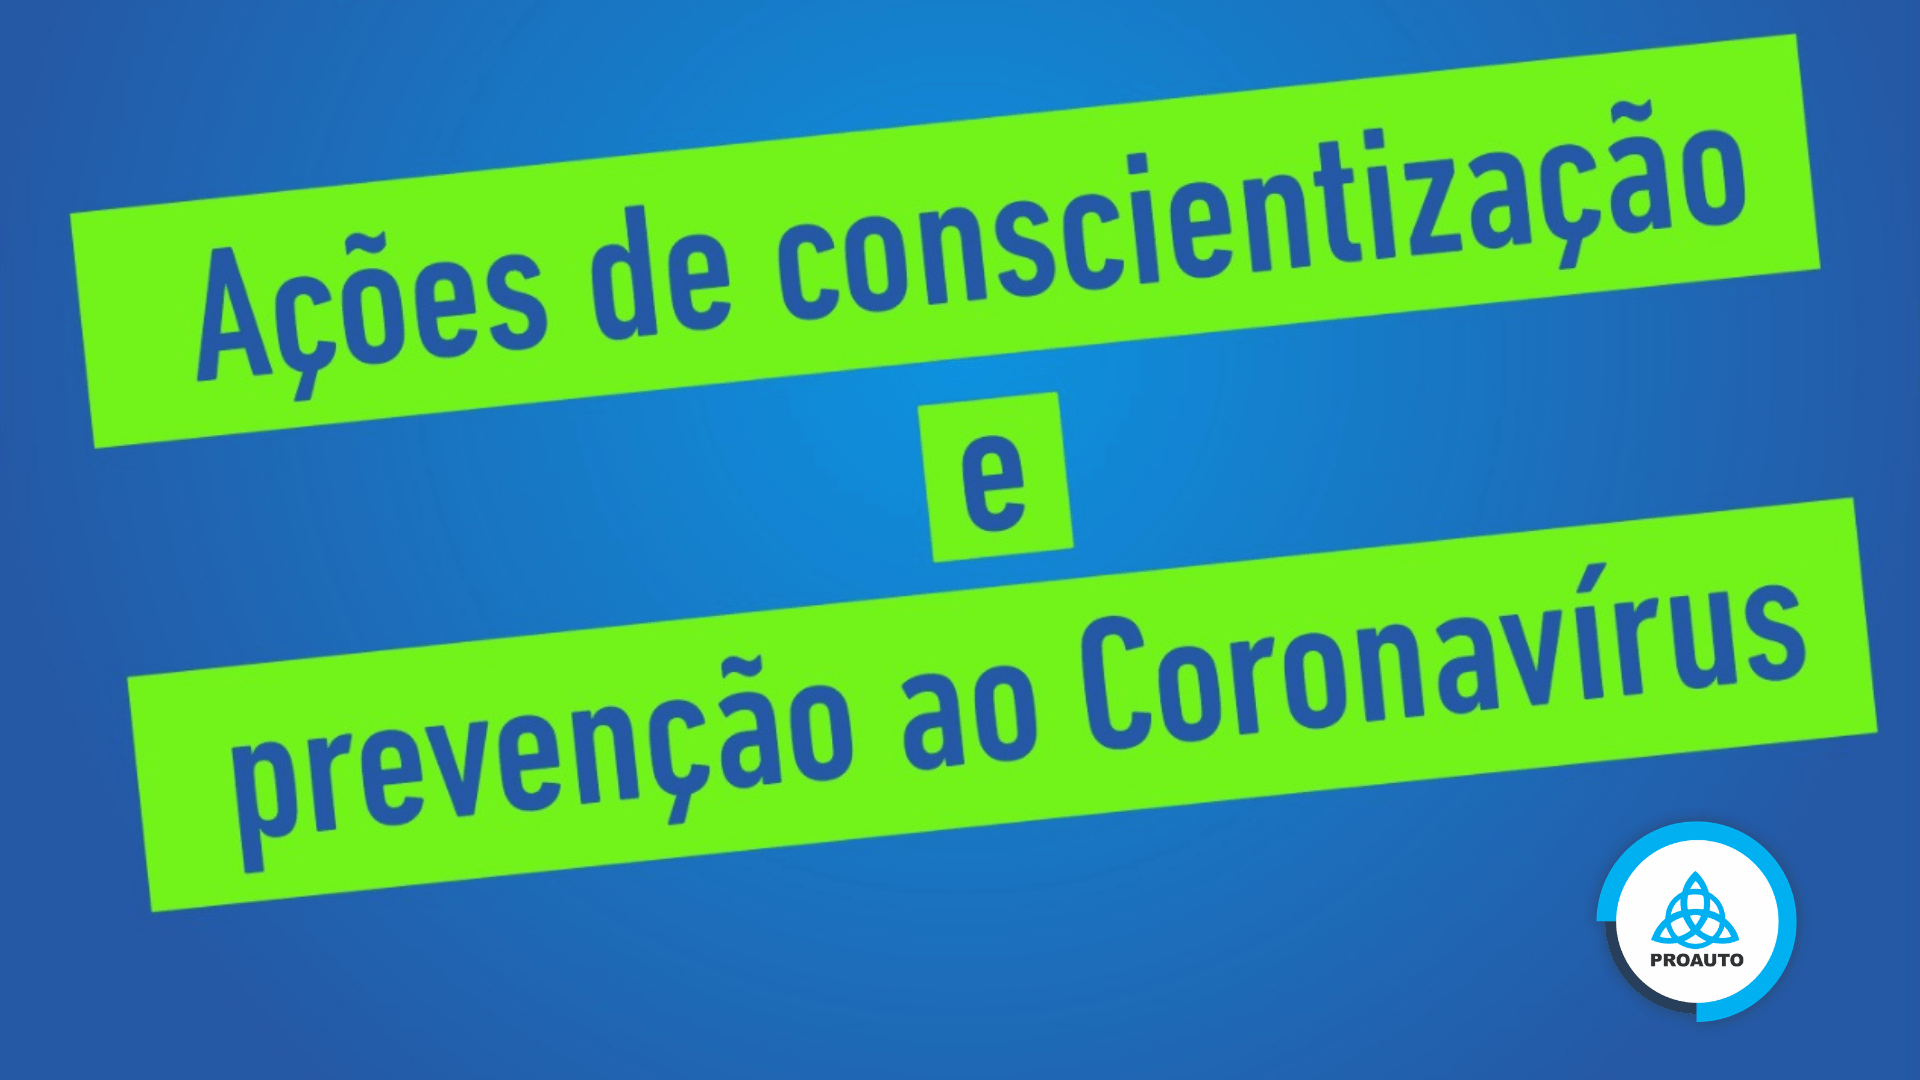  - PROAUTO – AÇÕES DE CONSCIENTIZAÇÃO E PREVENÇÃO AO CORONAVÍRUS